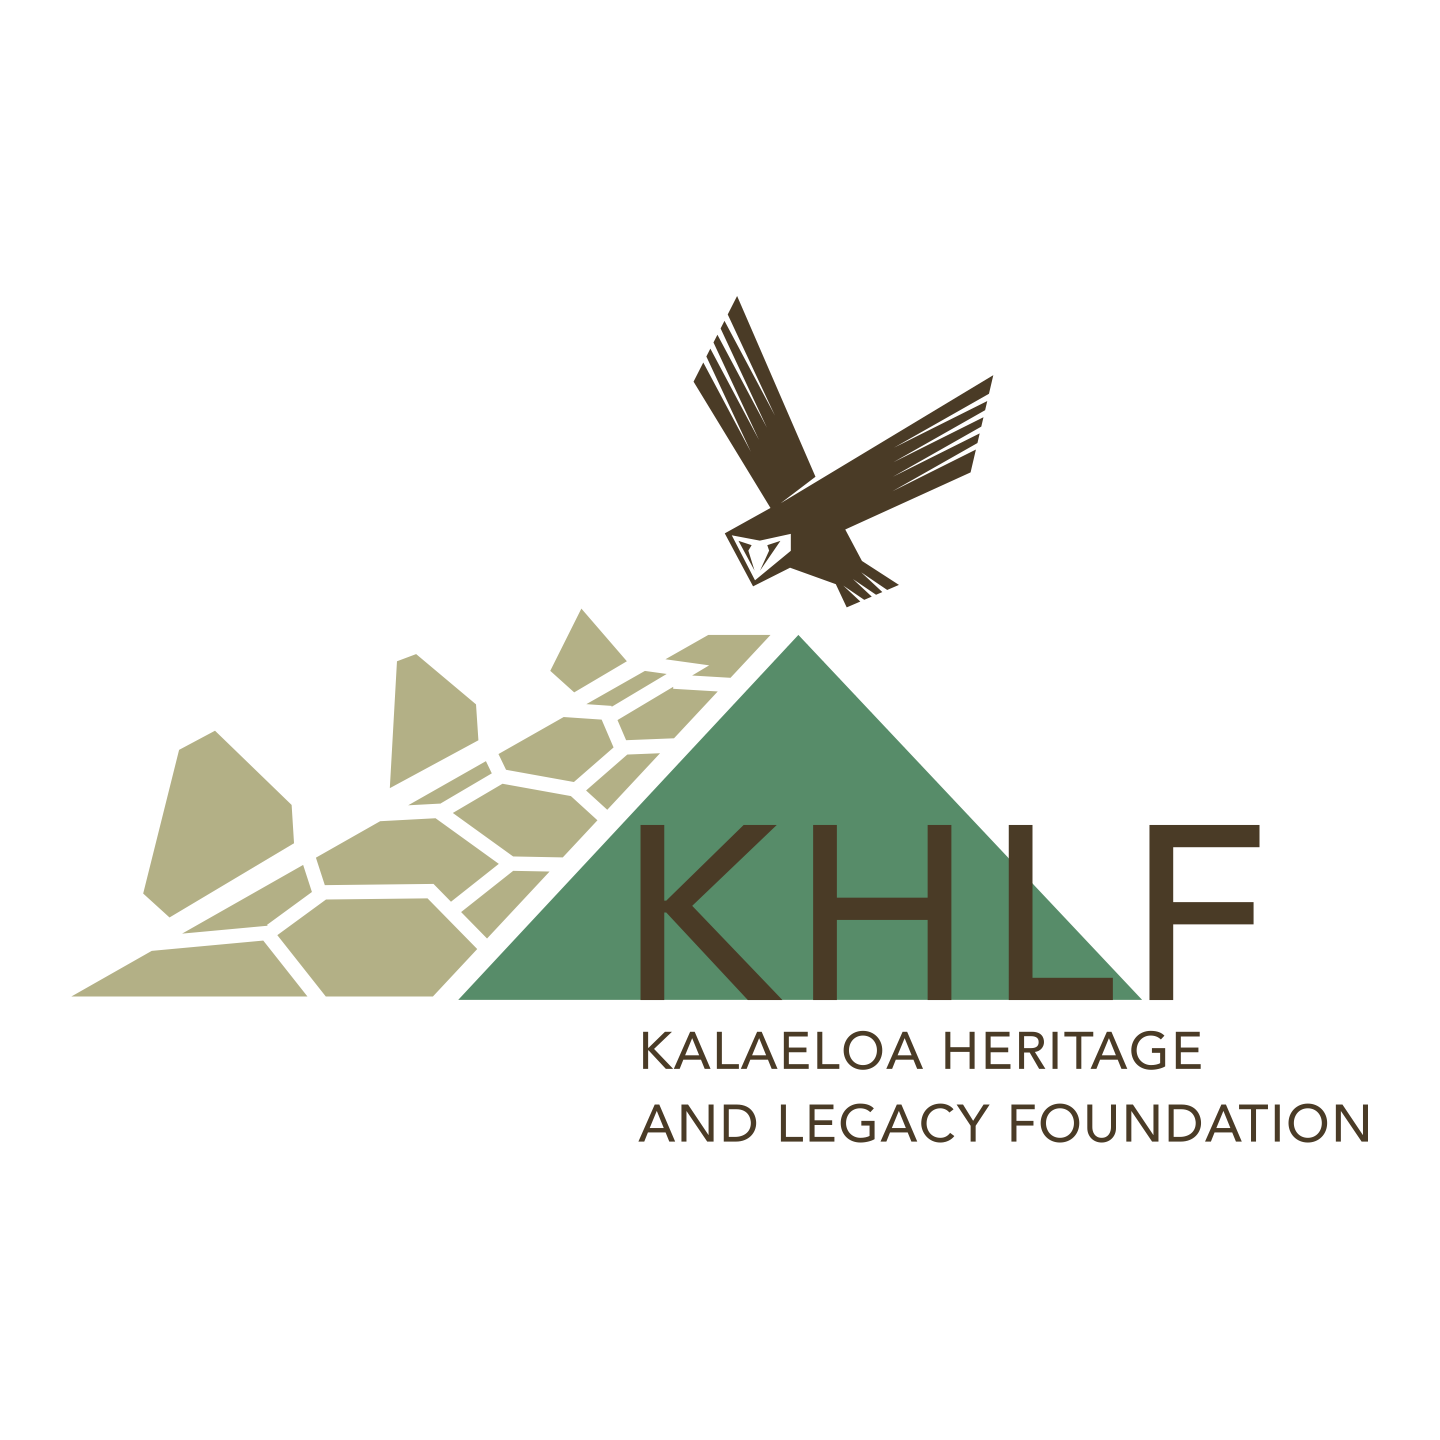 KHLF.org: Kalaeloa Heritage and Legacy Foundation